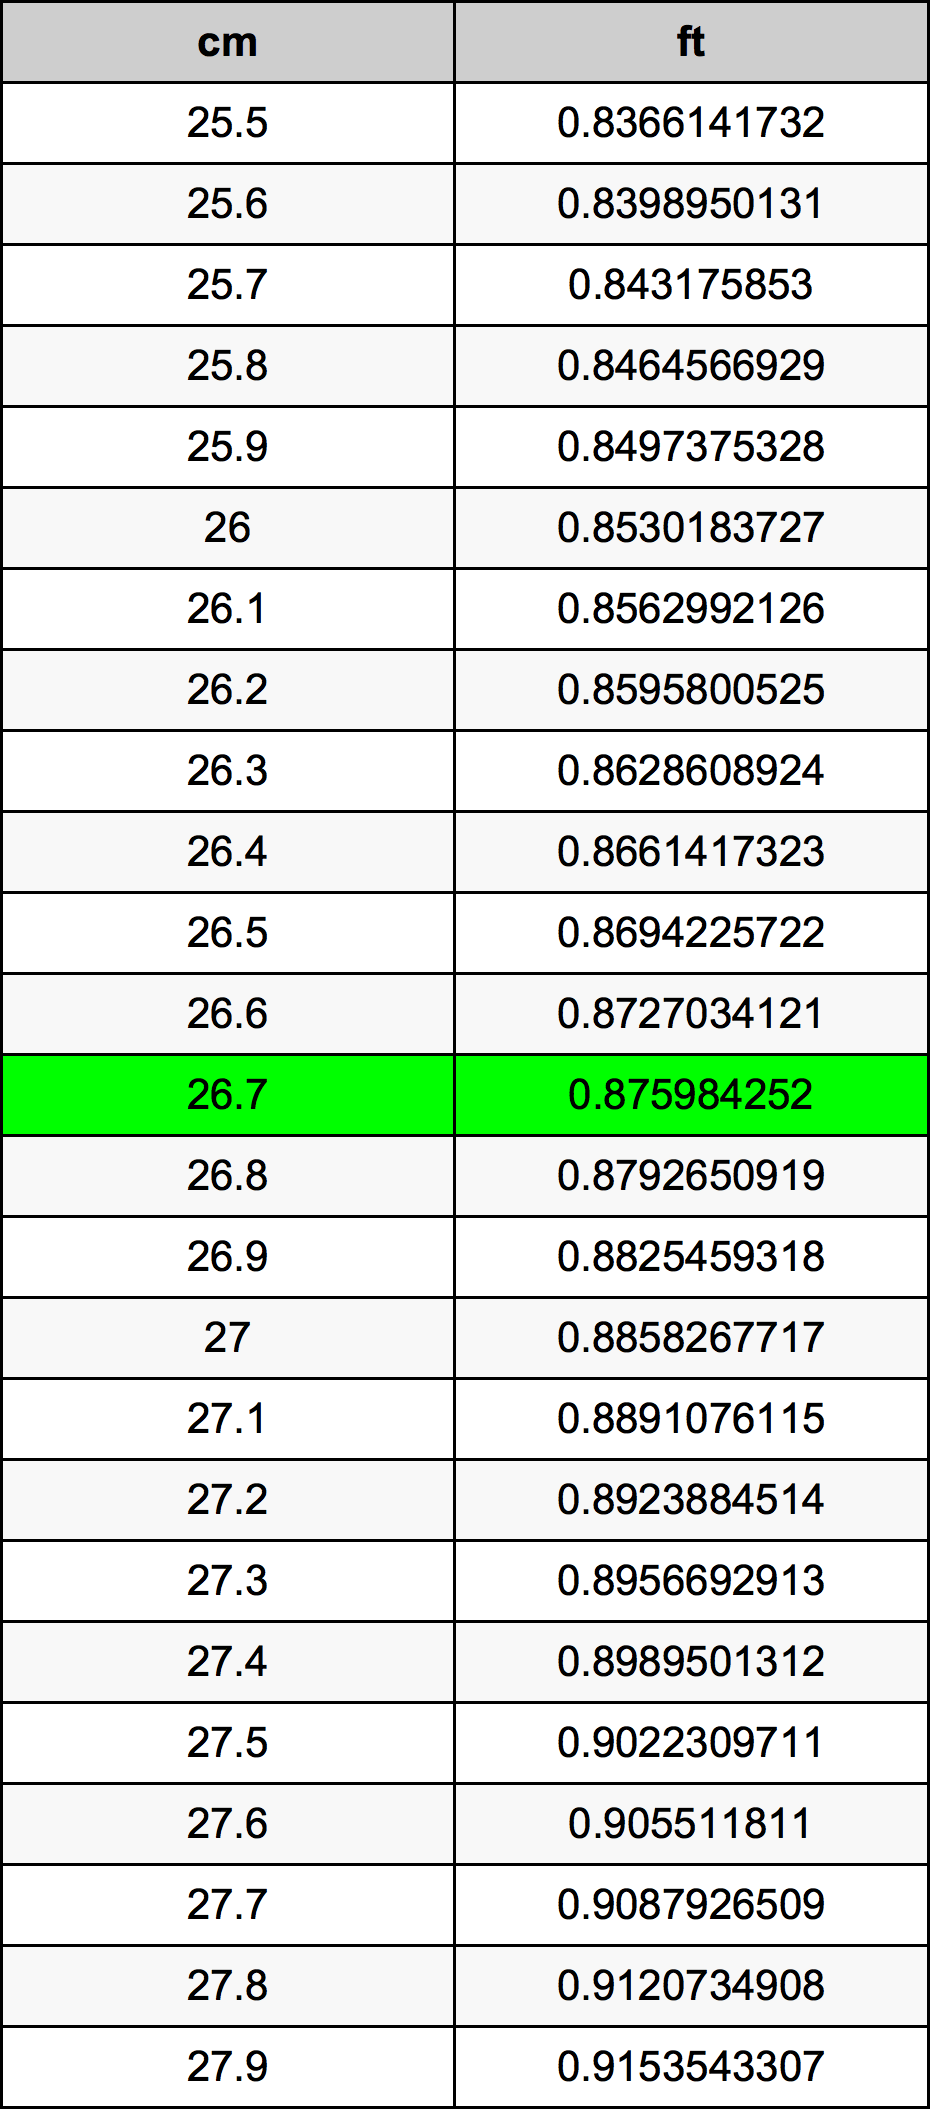 26.7 Centiméter átszámítási táblázat